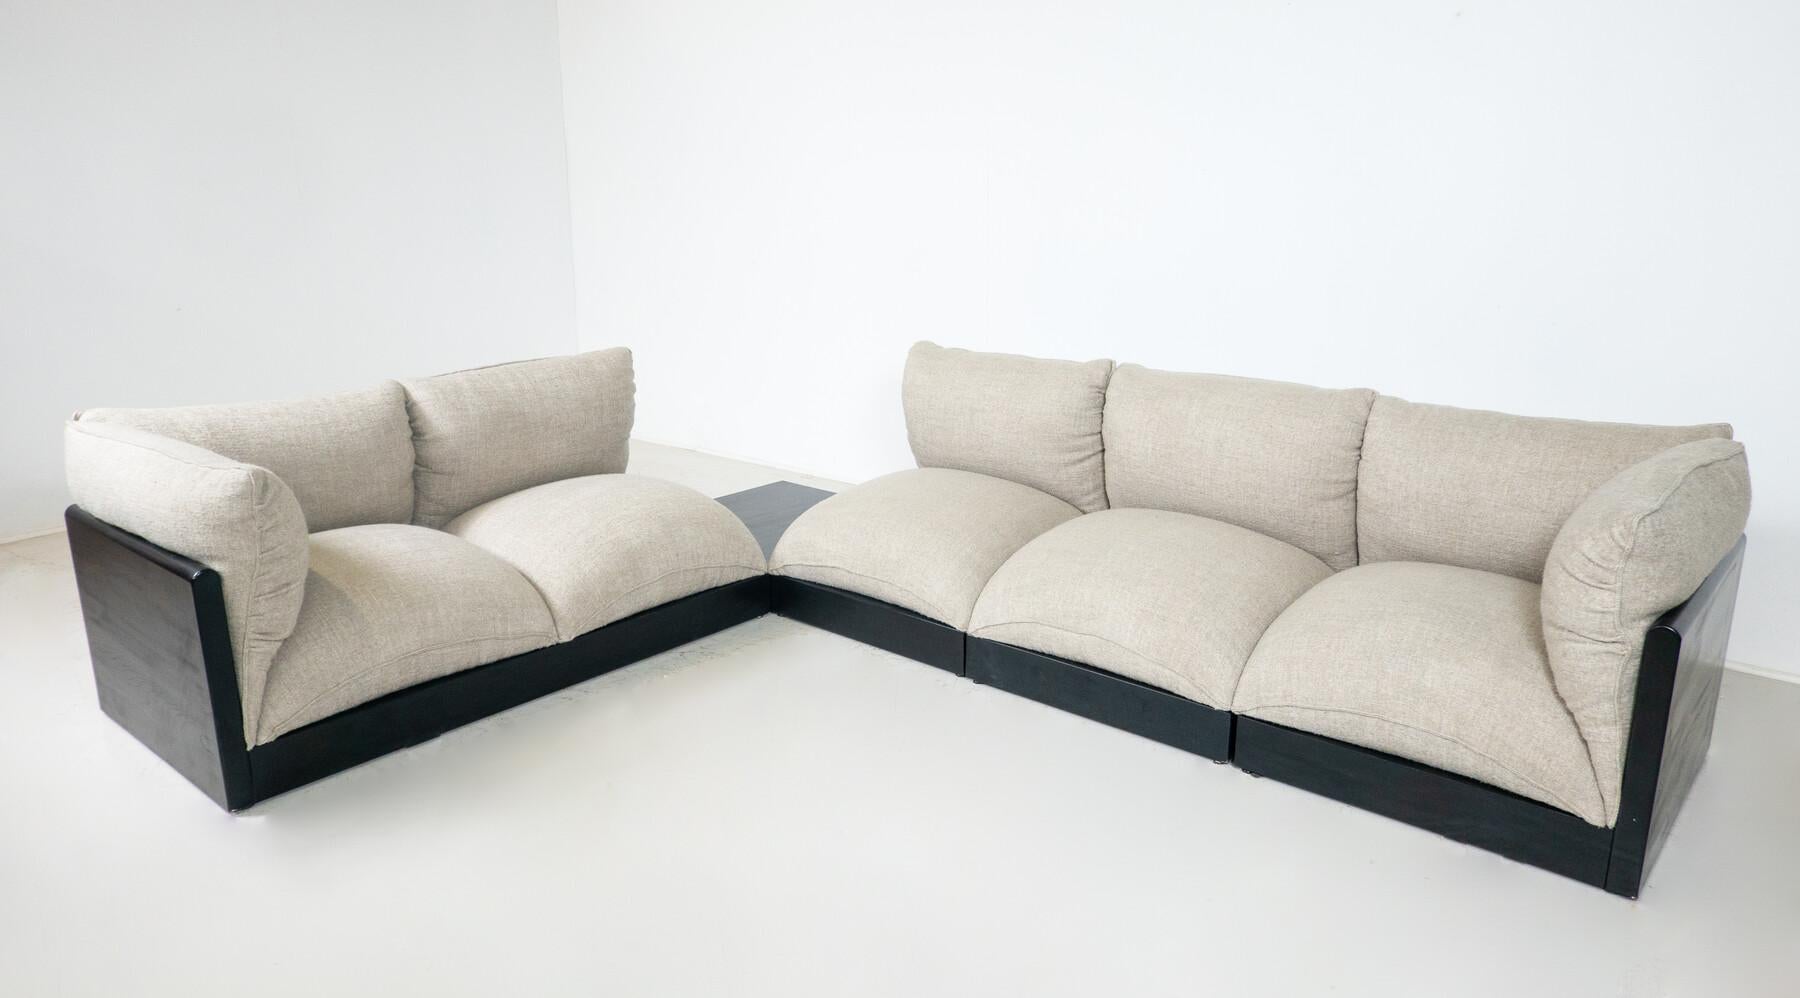 Modulares mundgeblasenes Sofa von Carlo Bartoli, Italien, 1970er Jahre, Neupolsterung

Abmessungen: 

- 68 B x 72,5 T x 68 H cm 

-mit Armlehnen : 73,5 W 

Sitzhöhe : 33 